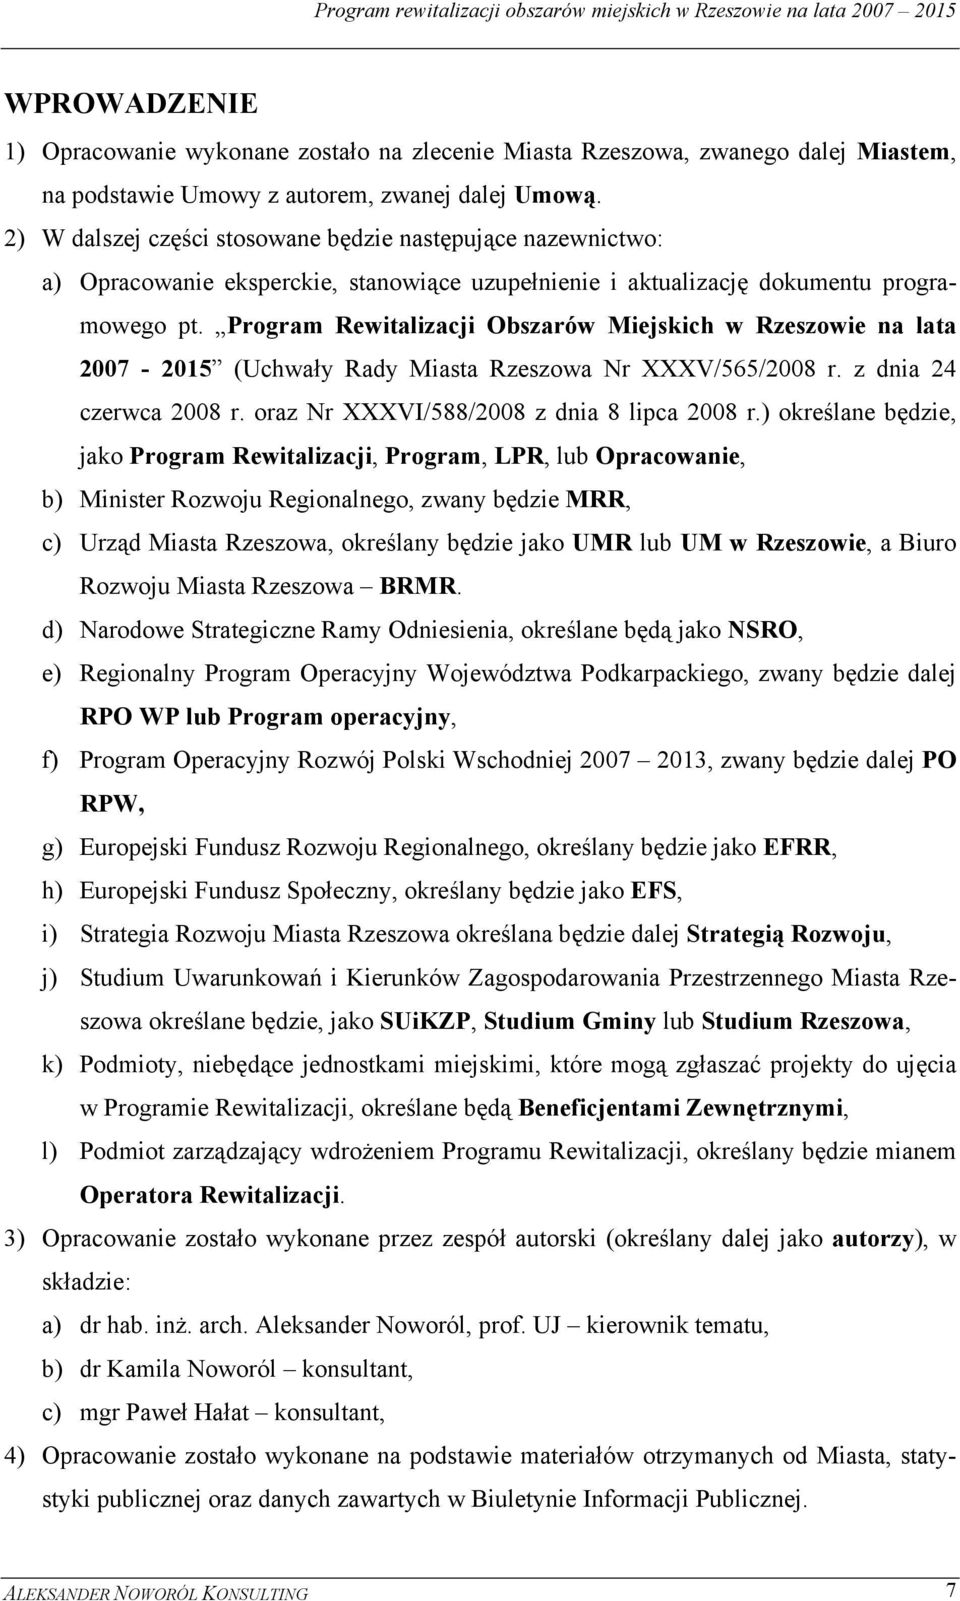 Program Rewitalizacji Obszarów Miejskich w Rzeszowie na lata 2007-2015 (Uchwały Rady Miasta Rzeszowa Nr XXXV/565/2008 r. z dnia 24 czerwca 2008 r. oraz Nr XXXVI/588/2008 z dnia 8 lipca 2008 r.